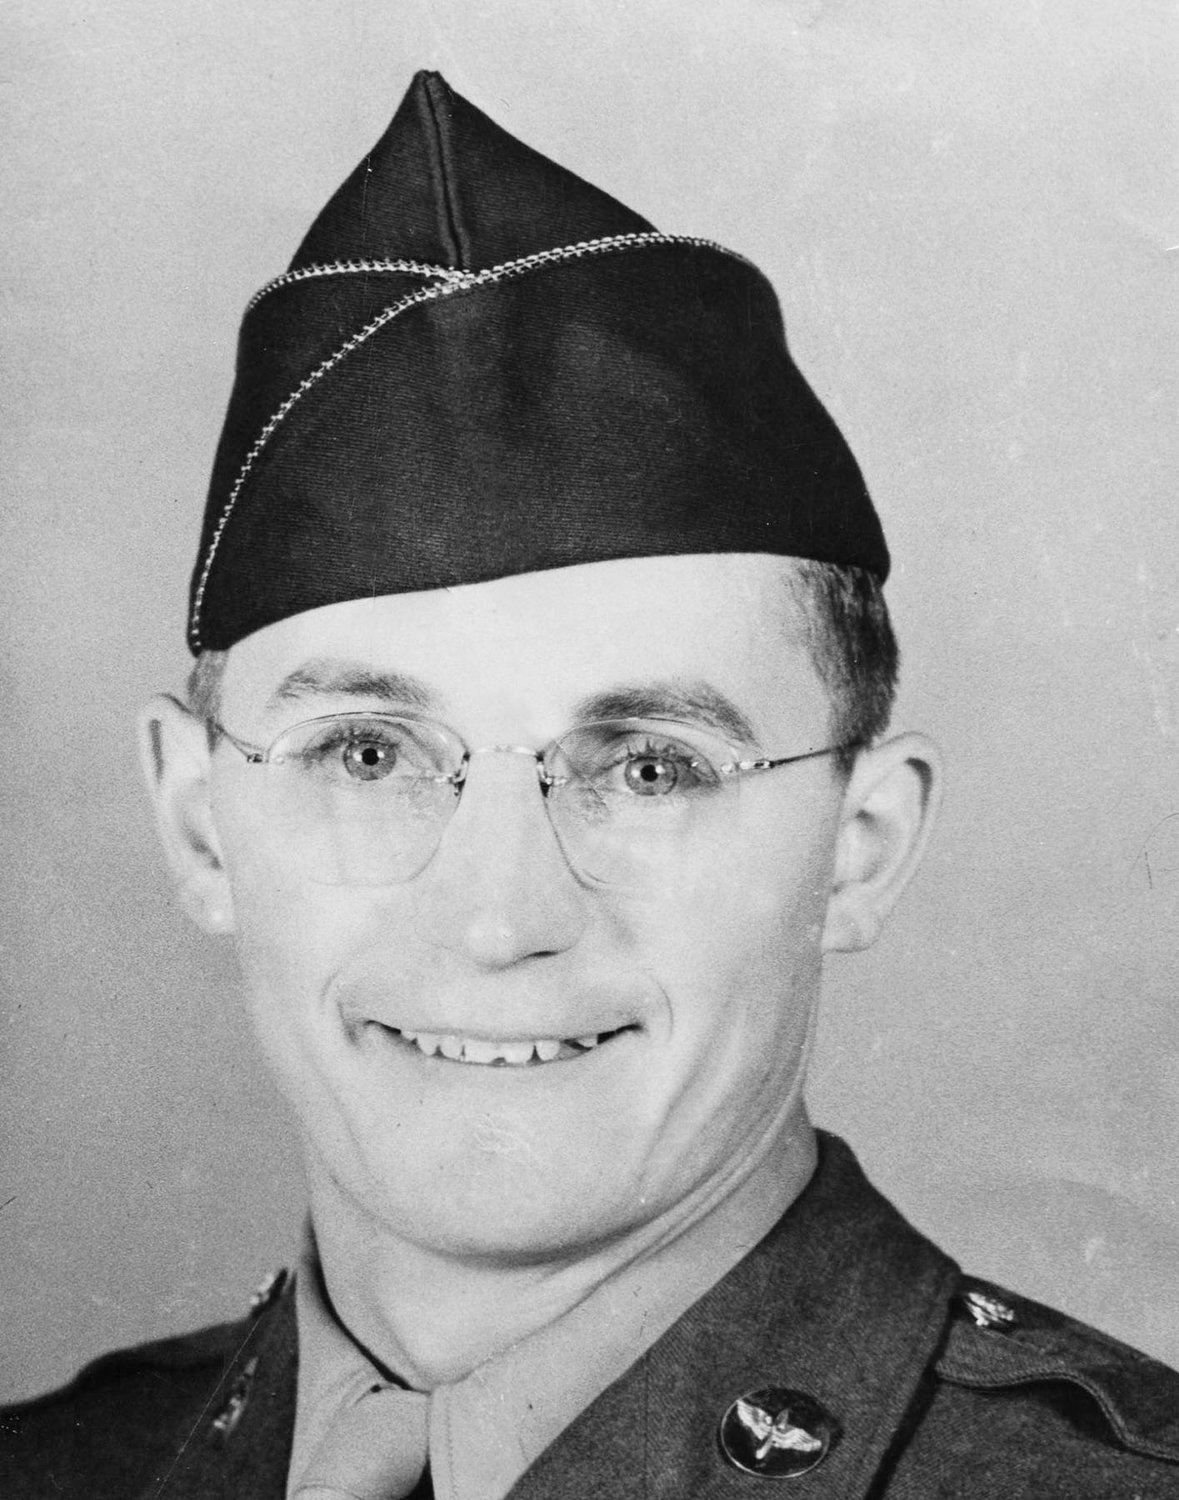 Joe Haenn in his Army photograph.